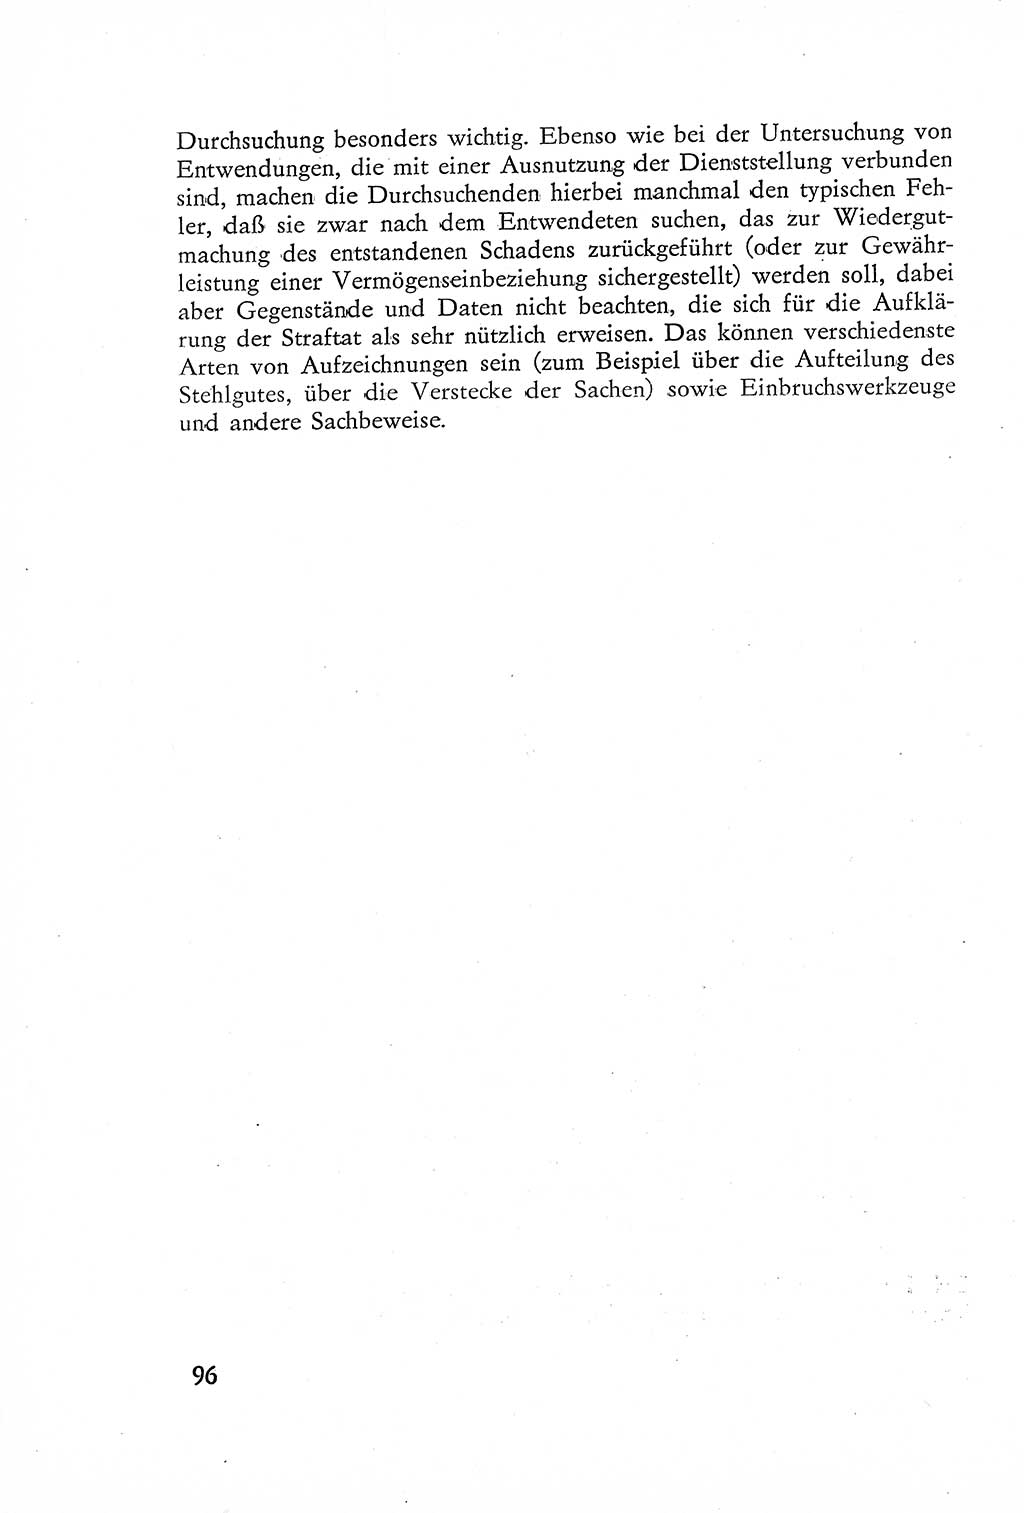 Die Untersuchung einzelner Verbrechensarten [Deutsche Demokratische Republik (DDR)] 1960, Seite 96 (Unters. Verbr.-Art. DDR 1960, S. 96)